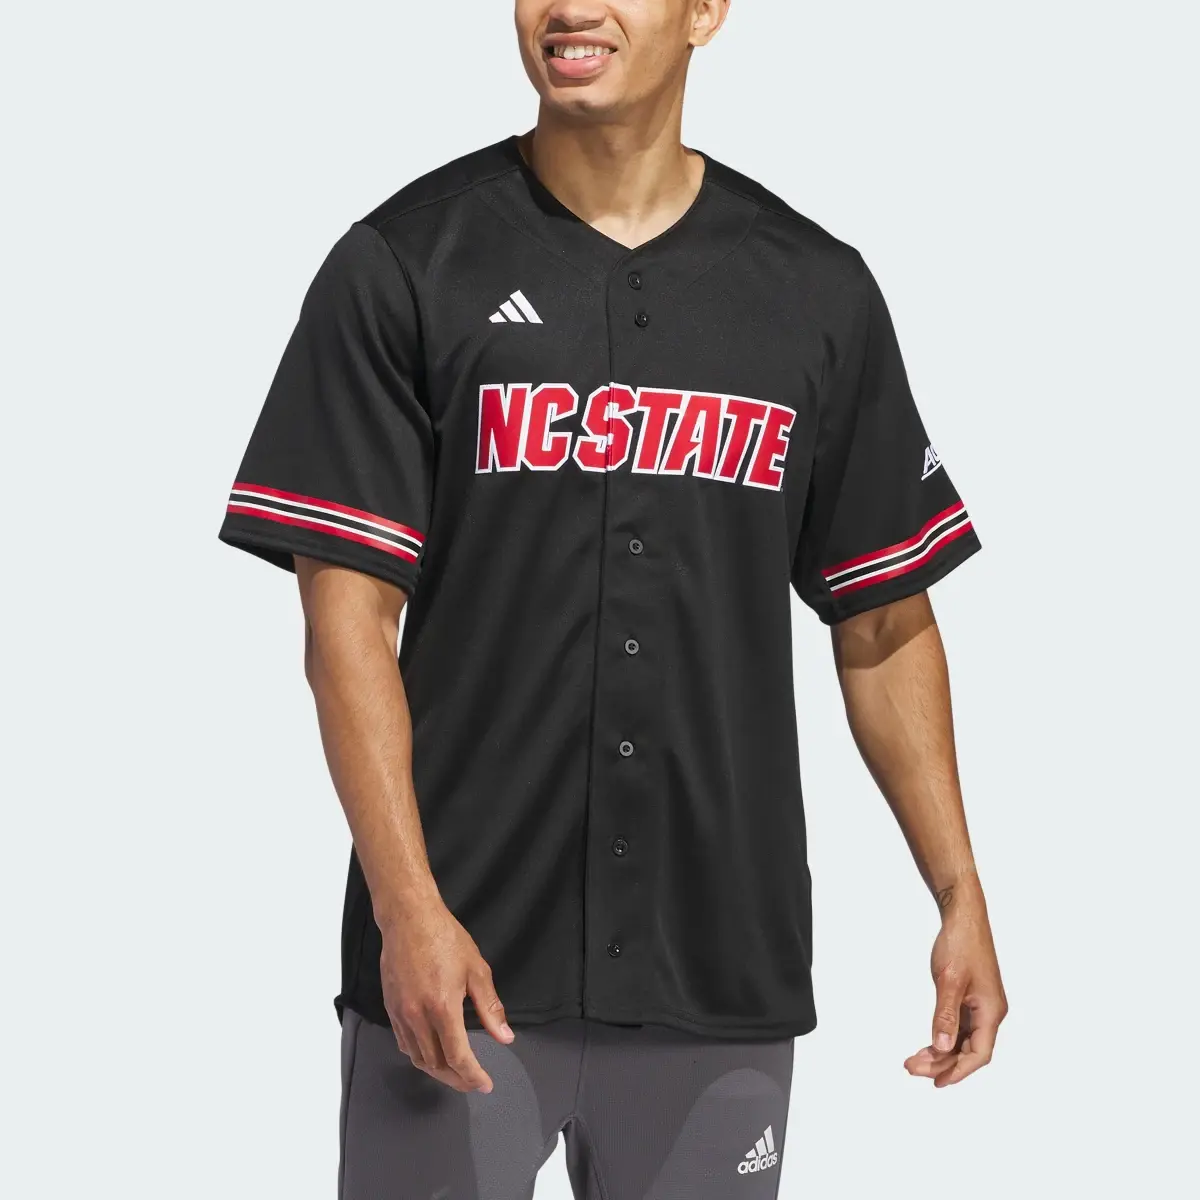 Adidas NC State Baseball Jersey. 1